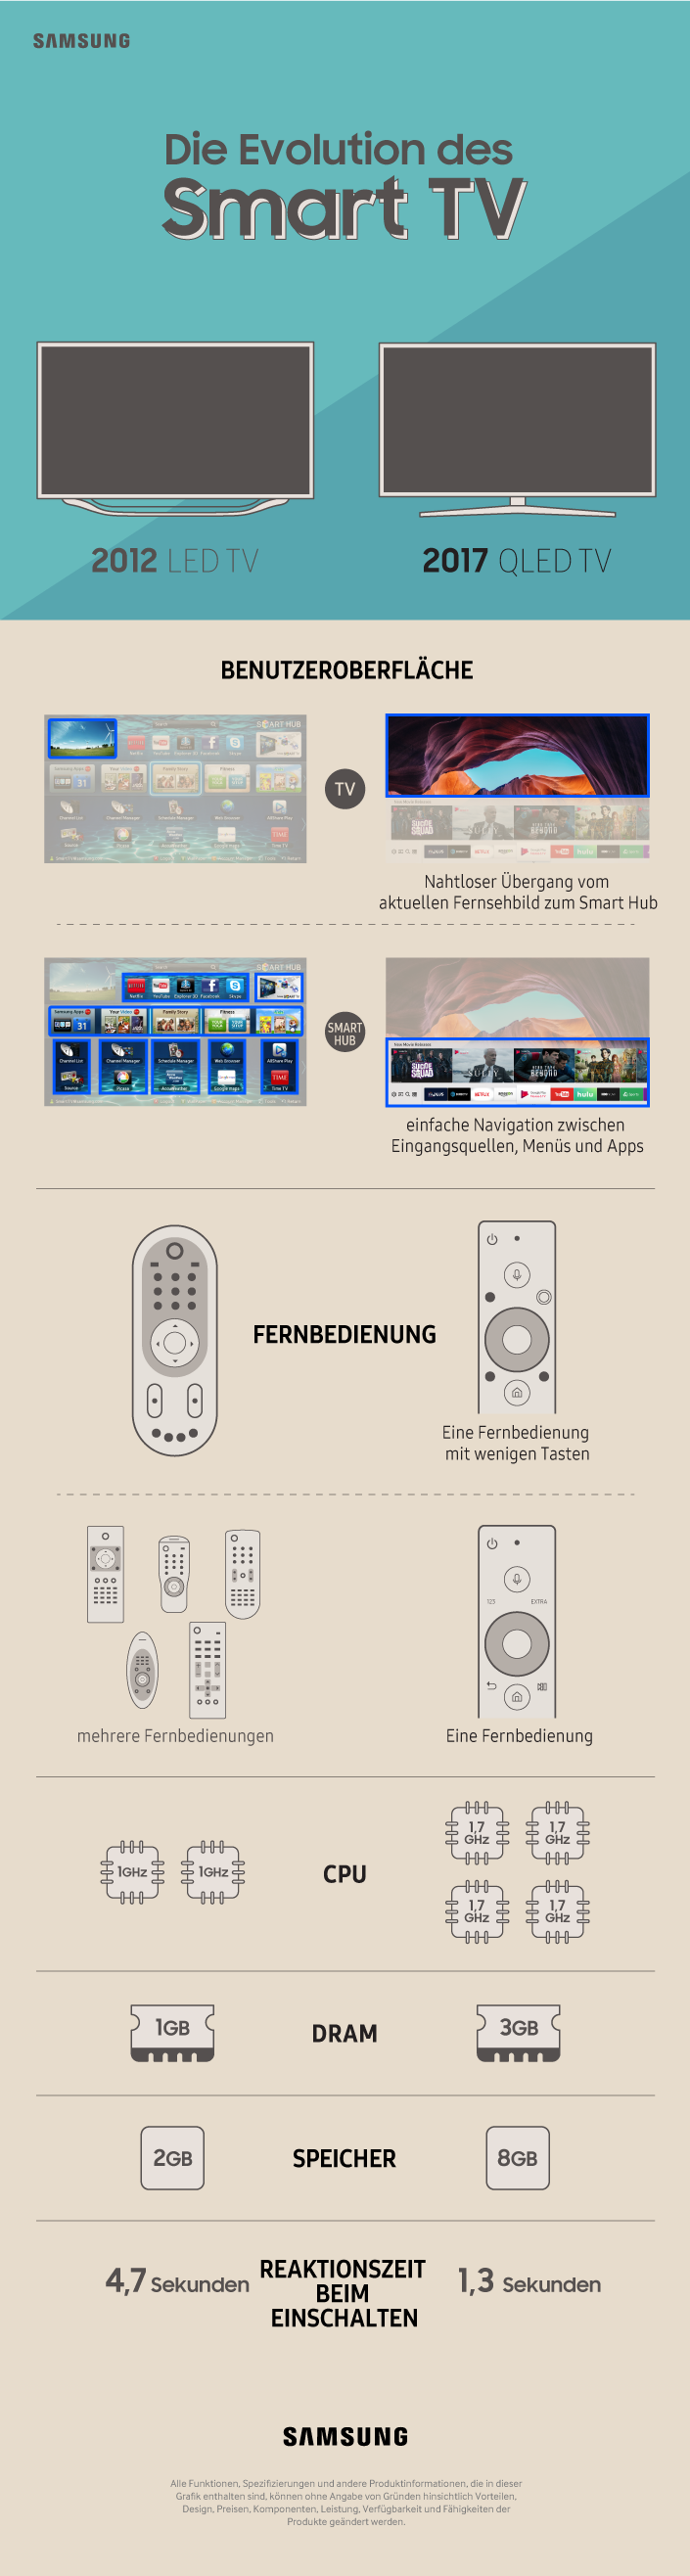 Samsung Evolution des Smart TV